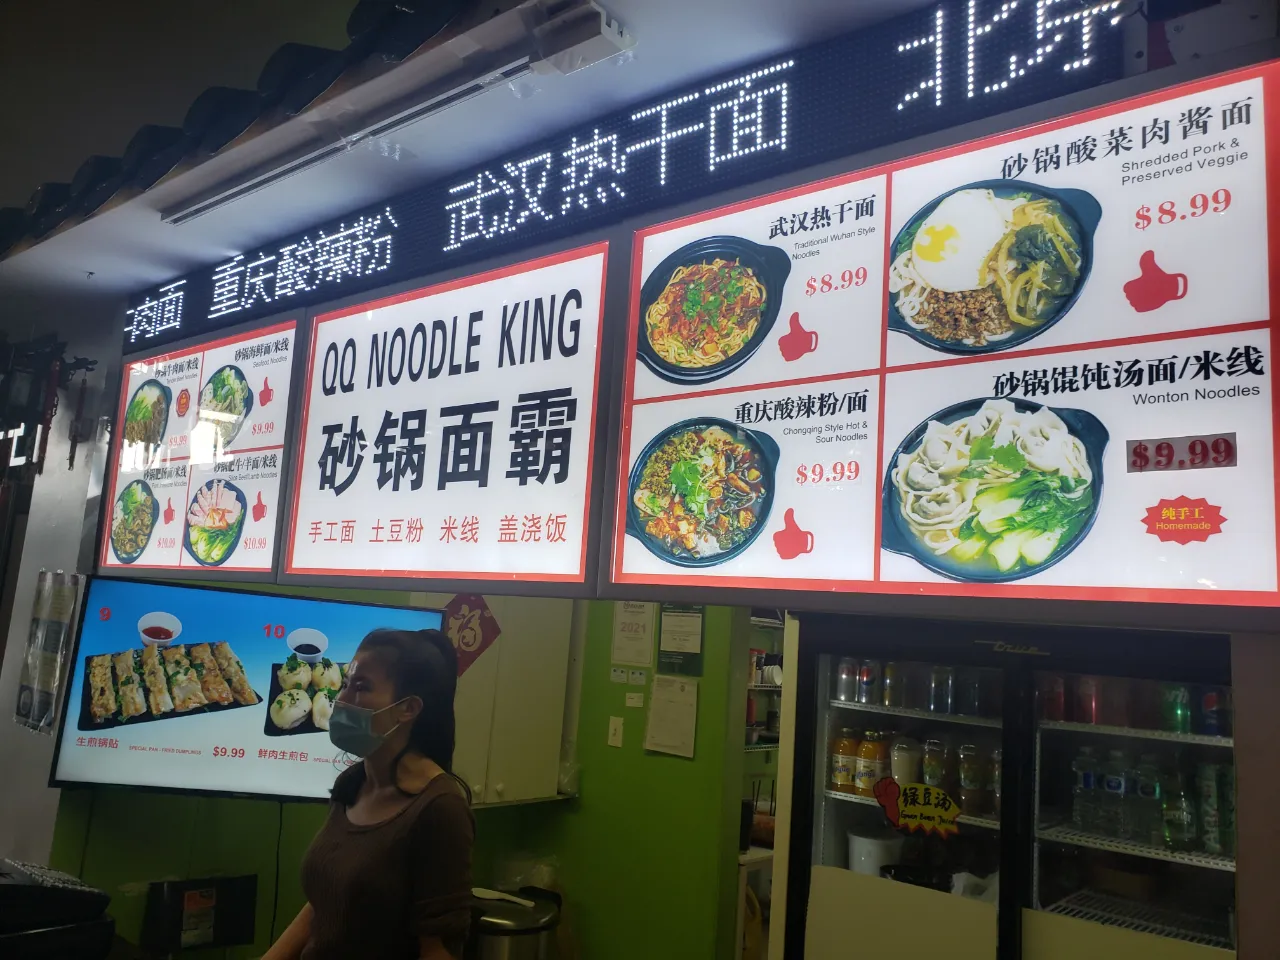 QQ Noodle King